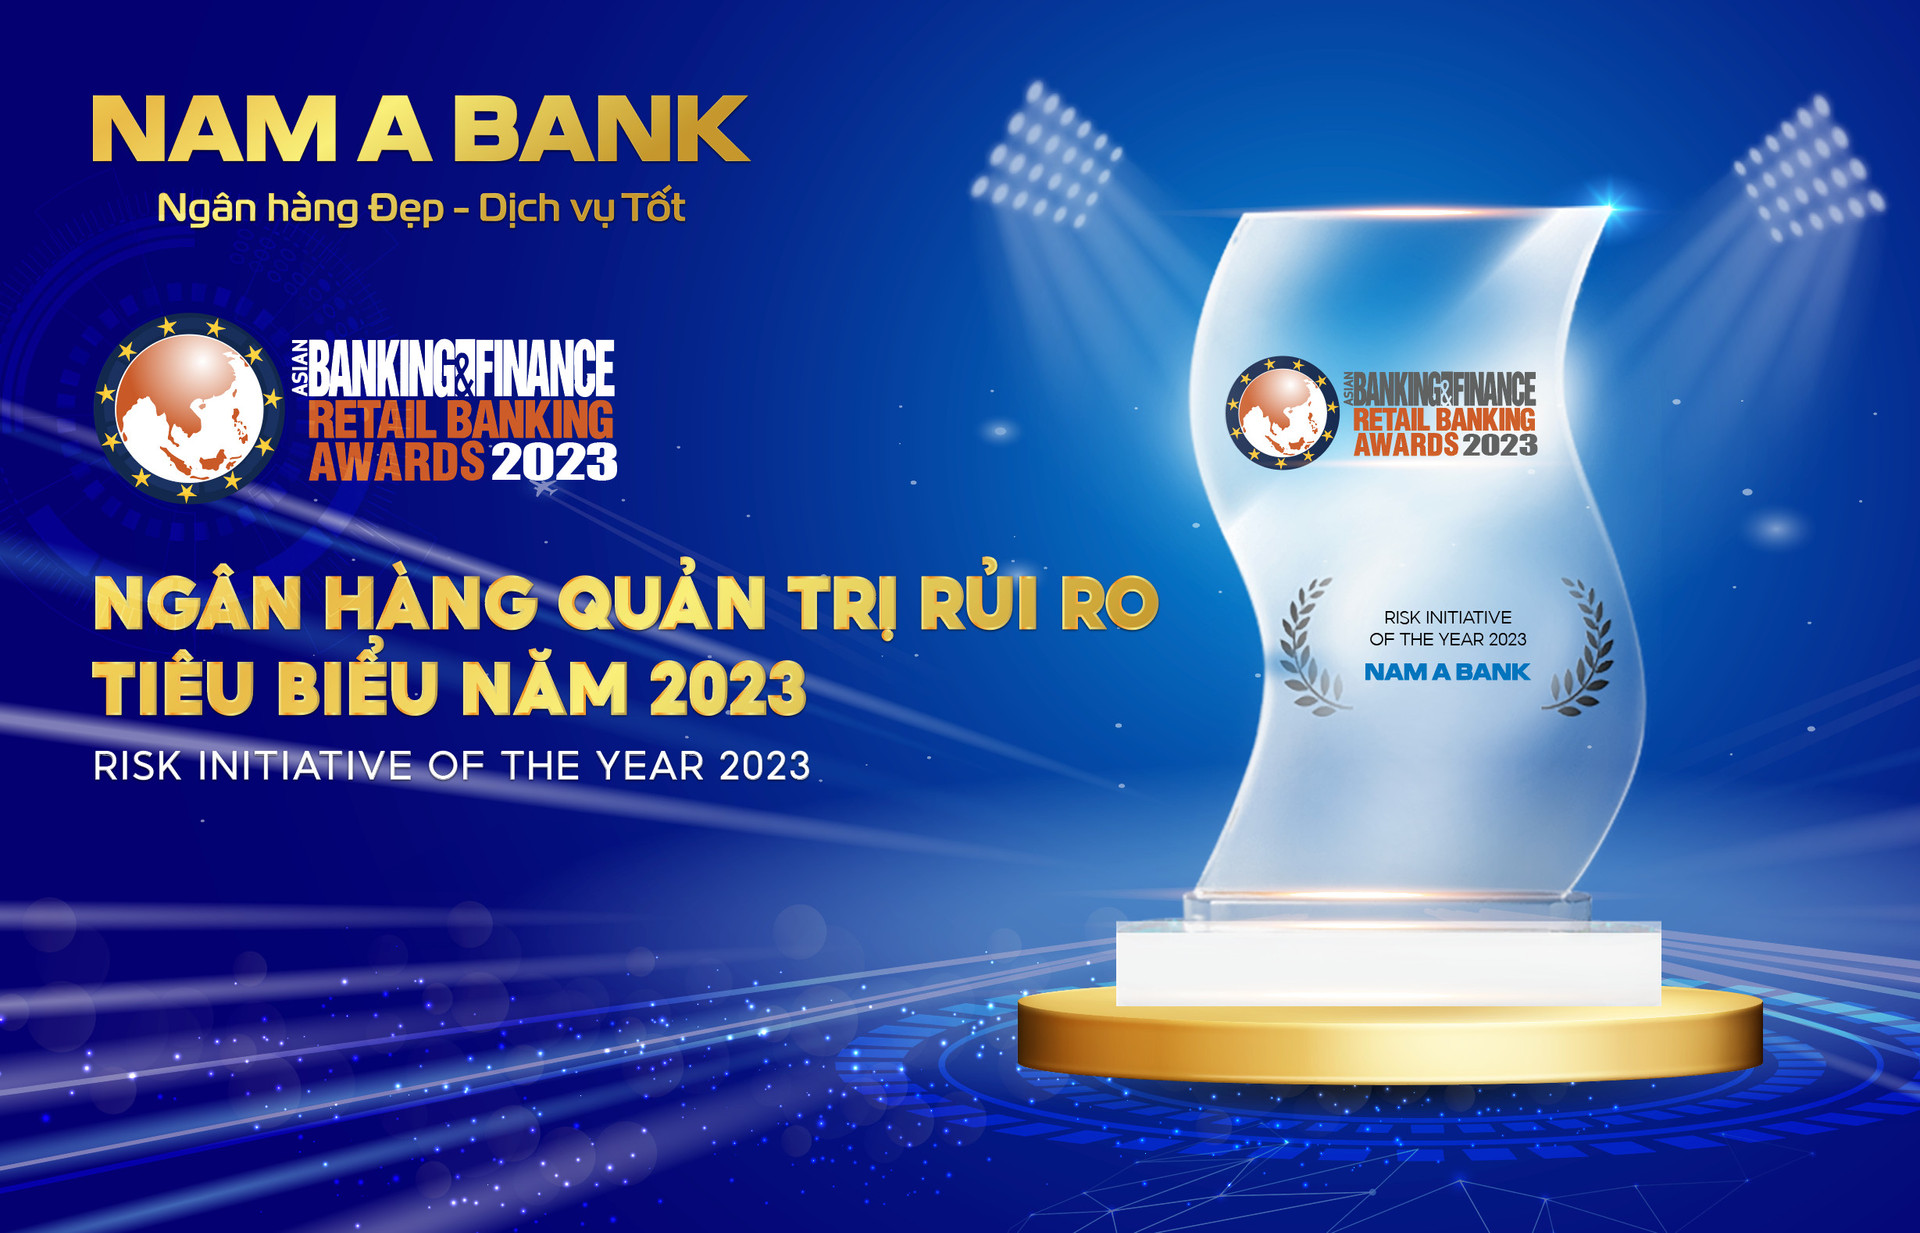 Nam A Bank đạt giải thưởng “Ngân Hàng Quản Trị rủi ro tiêu biểu năm 2023”.